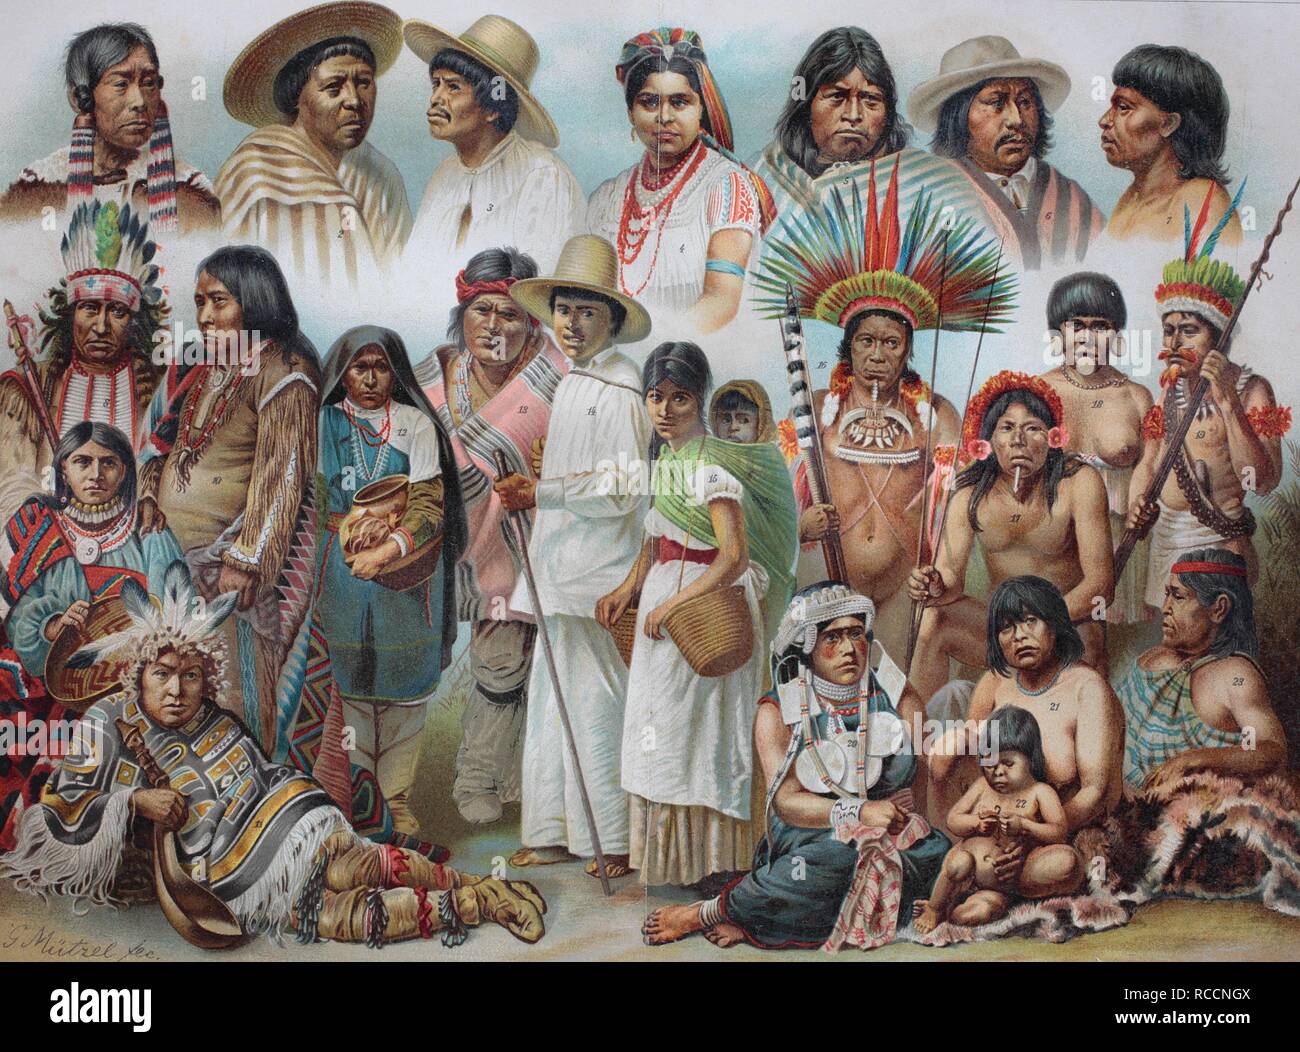 Народы заселяющие южную америку. Индейцы в Латинской Америке 19 век. Индейские племена Латинской Америки. Этническая живопись. Живопись народов Америки.